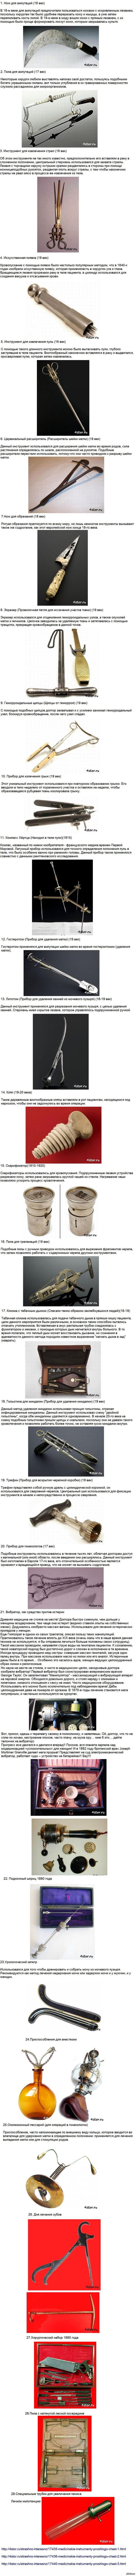     (2- ) ()  1-  - http://pikabu.ru/story/koshmarnyie_meditsinskie_instrumentyi_proshlogo_dlinnopost_1094749